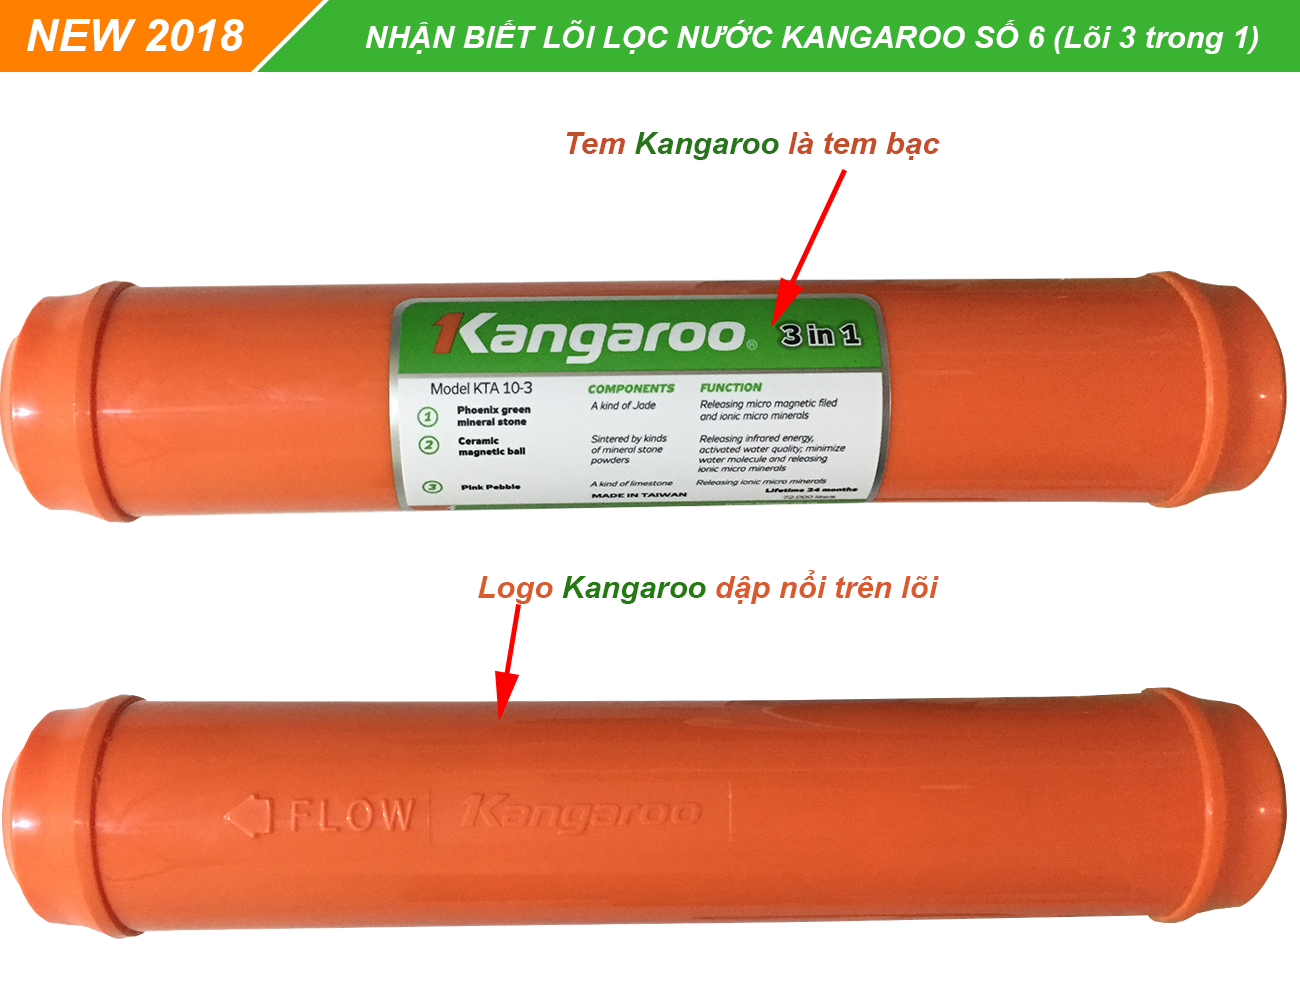 Nhận biết lõi lọc nước Kangaroo 3 trong 1 chính hãng